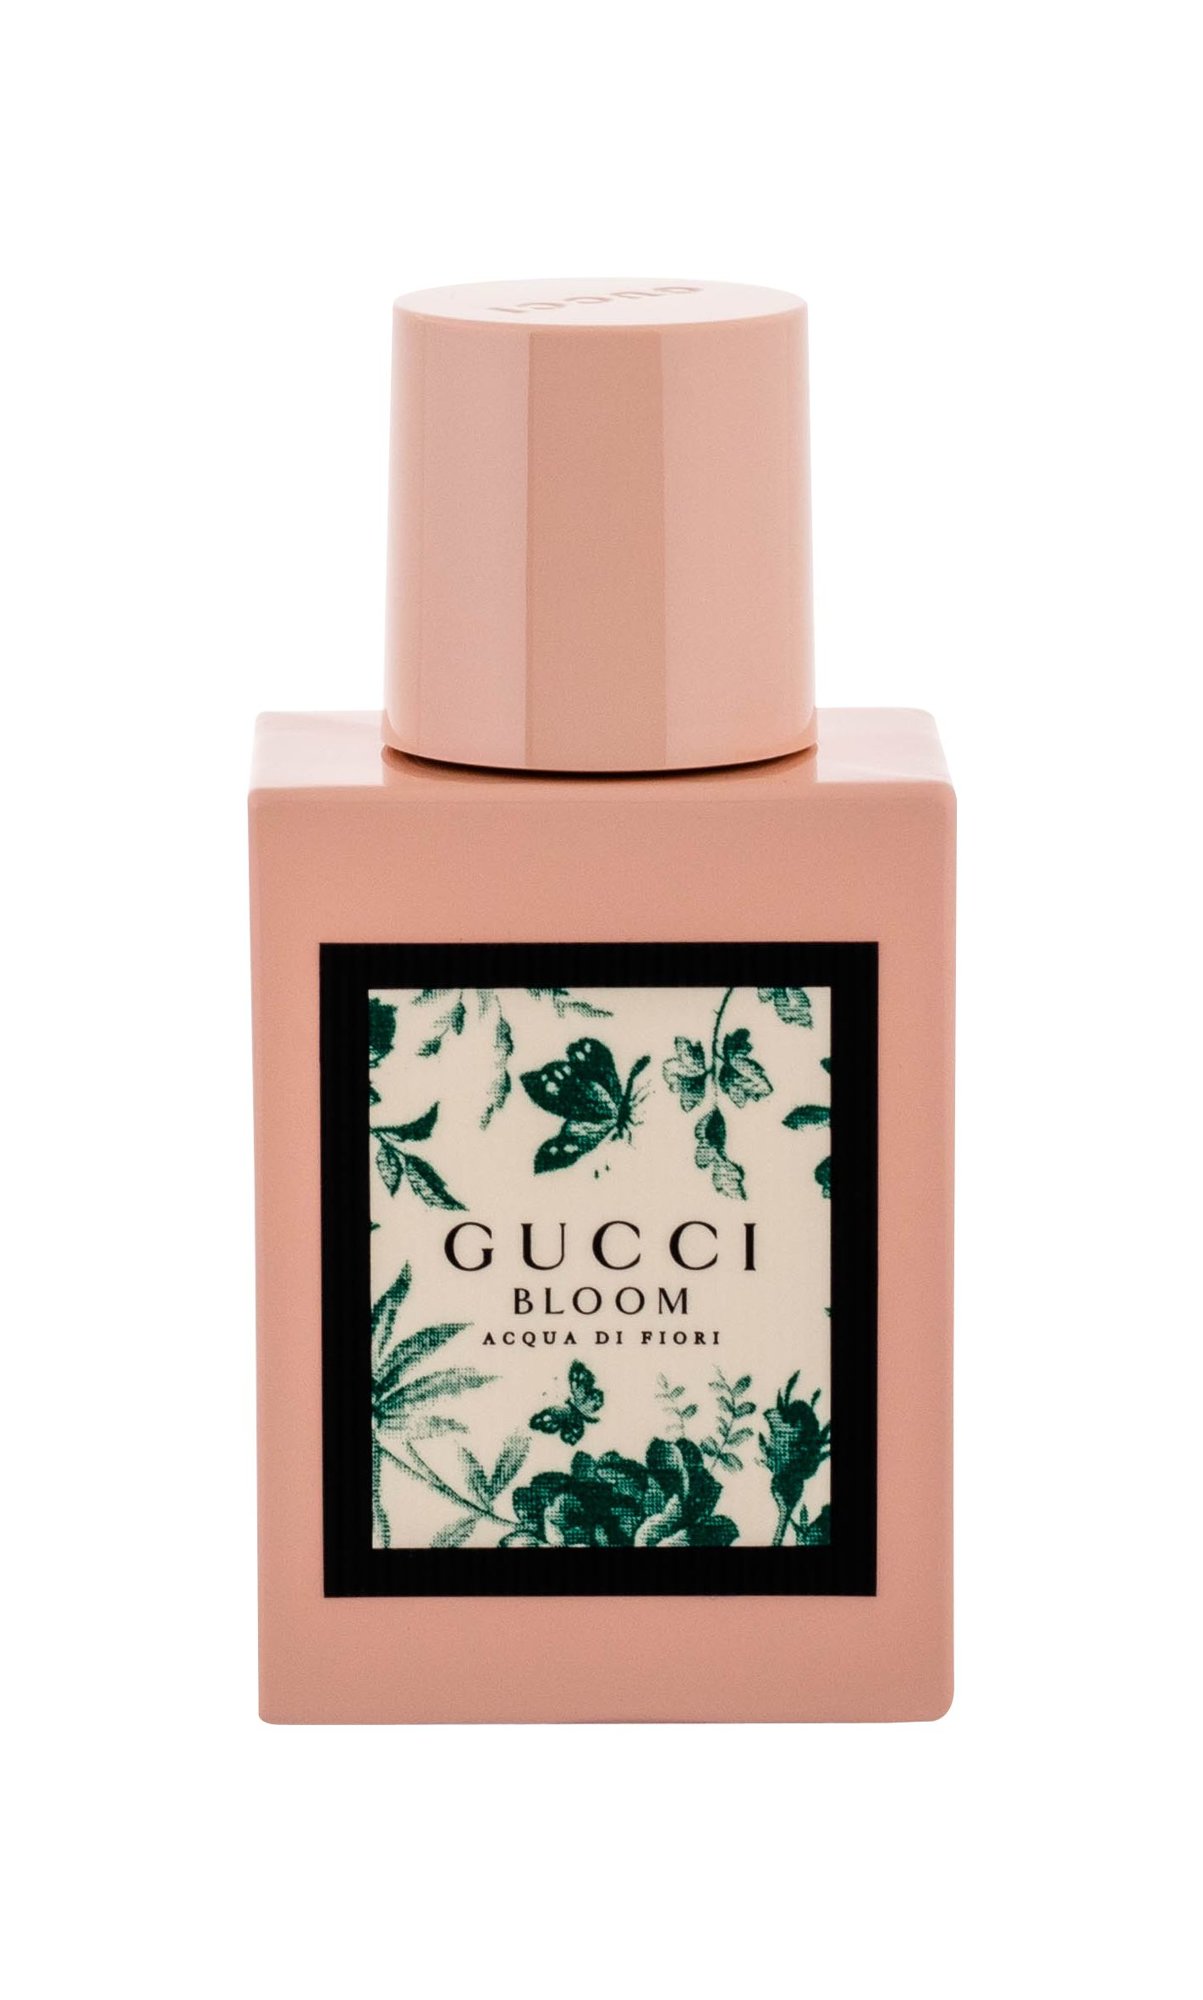 Gucci Bloom Acqua di Fiori, Toaletní voda 30ml